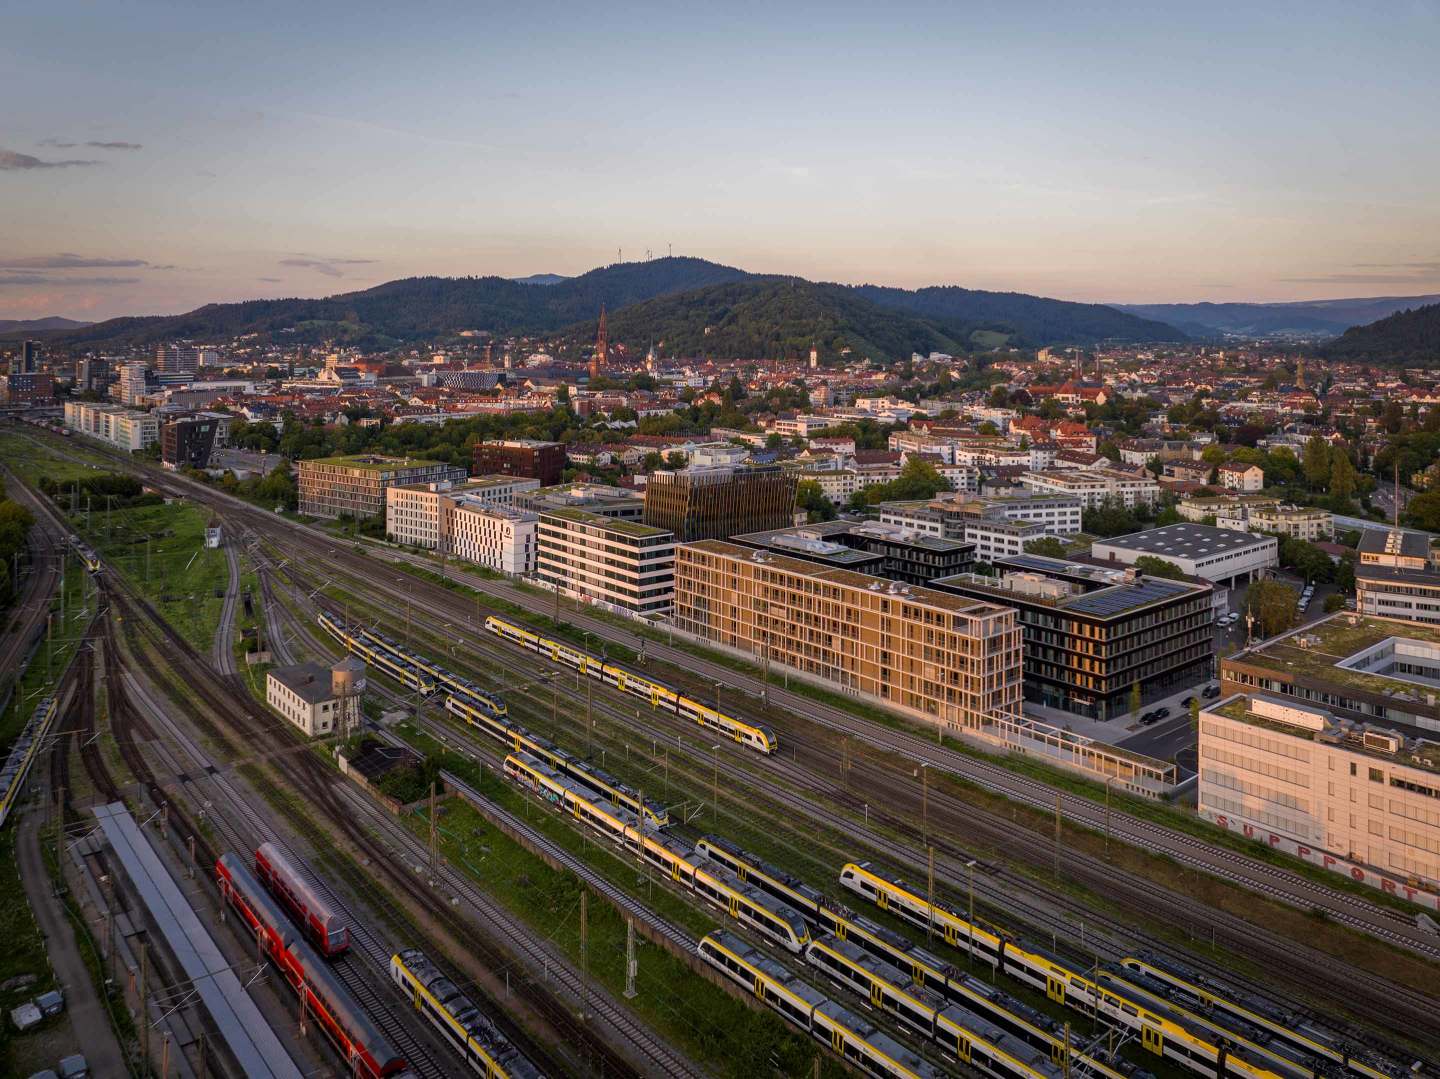 Bild: Die Businessmile in Freiburg beim Sonnenaufgang aus der Vogelperspektive